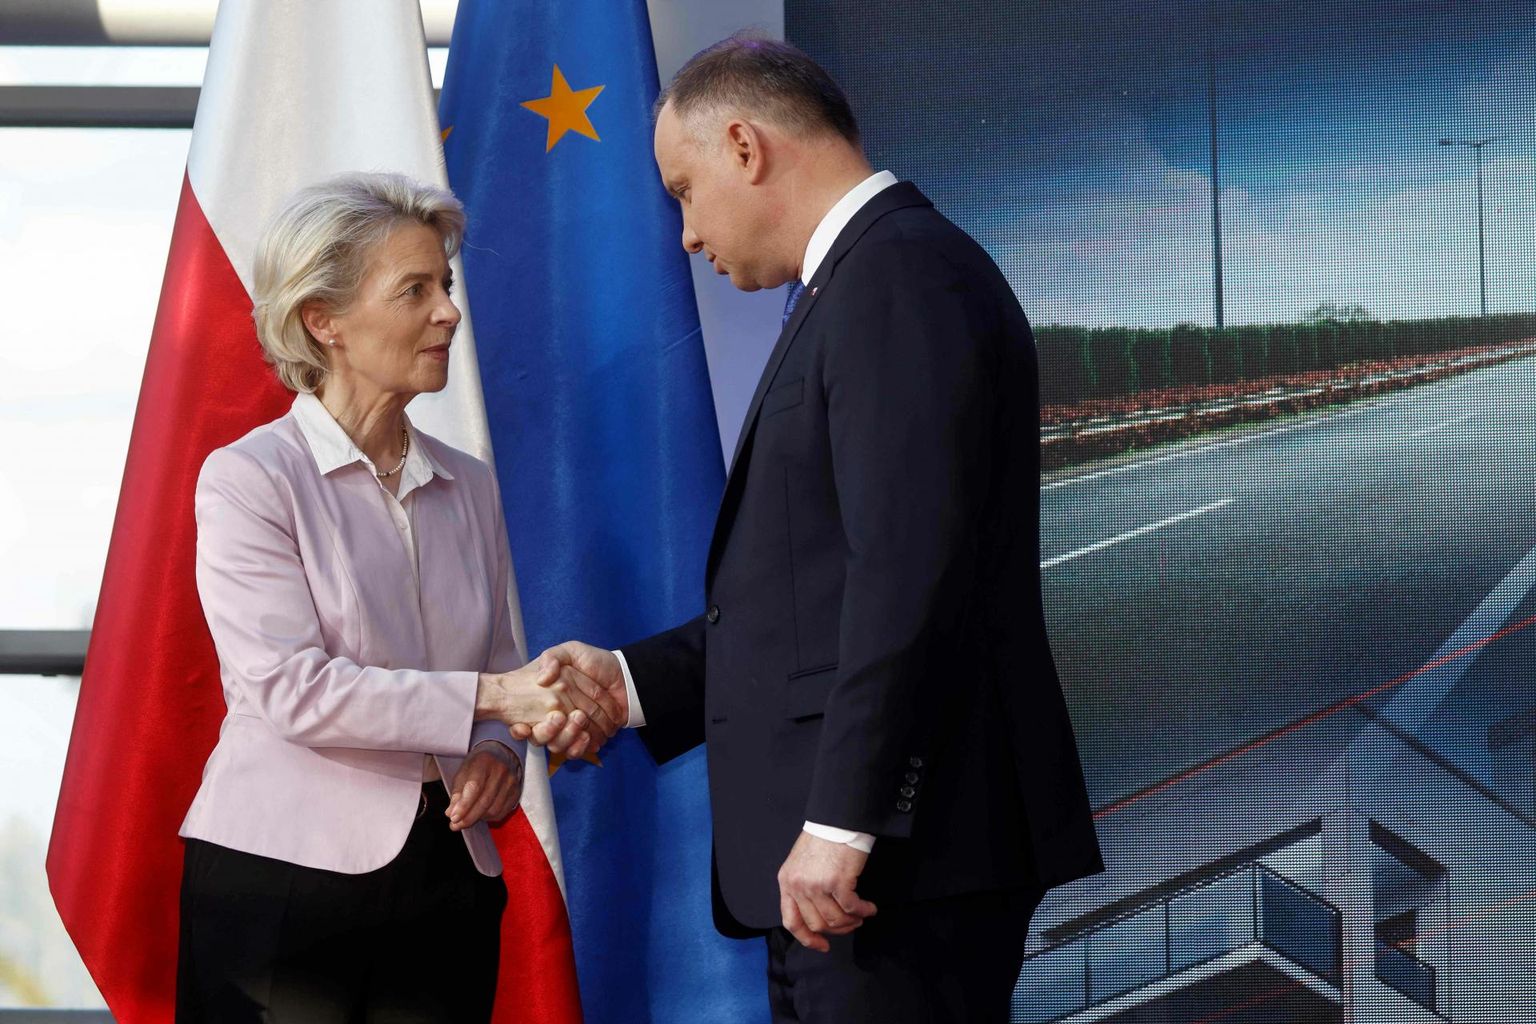 Euroopa Komisjoni president Ursula von der Leyen avaldas Poola taastekavale toetust juuni alguses, kui kohtus Varssavis riigi presidendi Andrzej Dudaga. Brüssel ei maksa raha enne välja, kui on ellu viidud kohtunikkonda puudutavad reformid. 